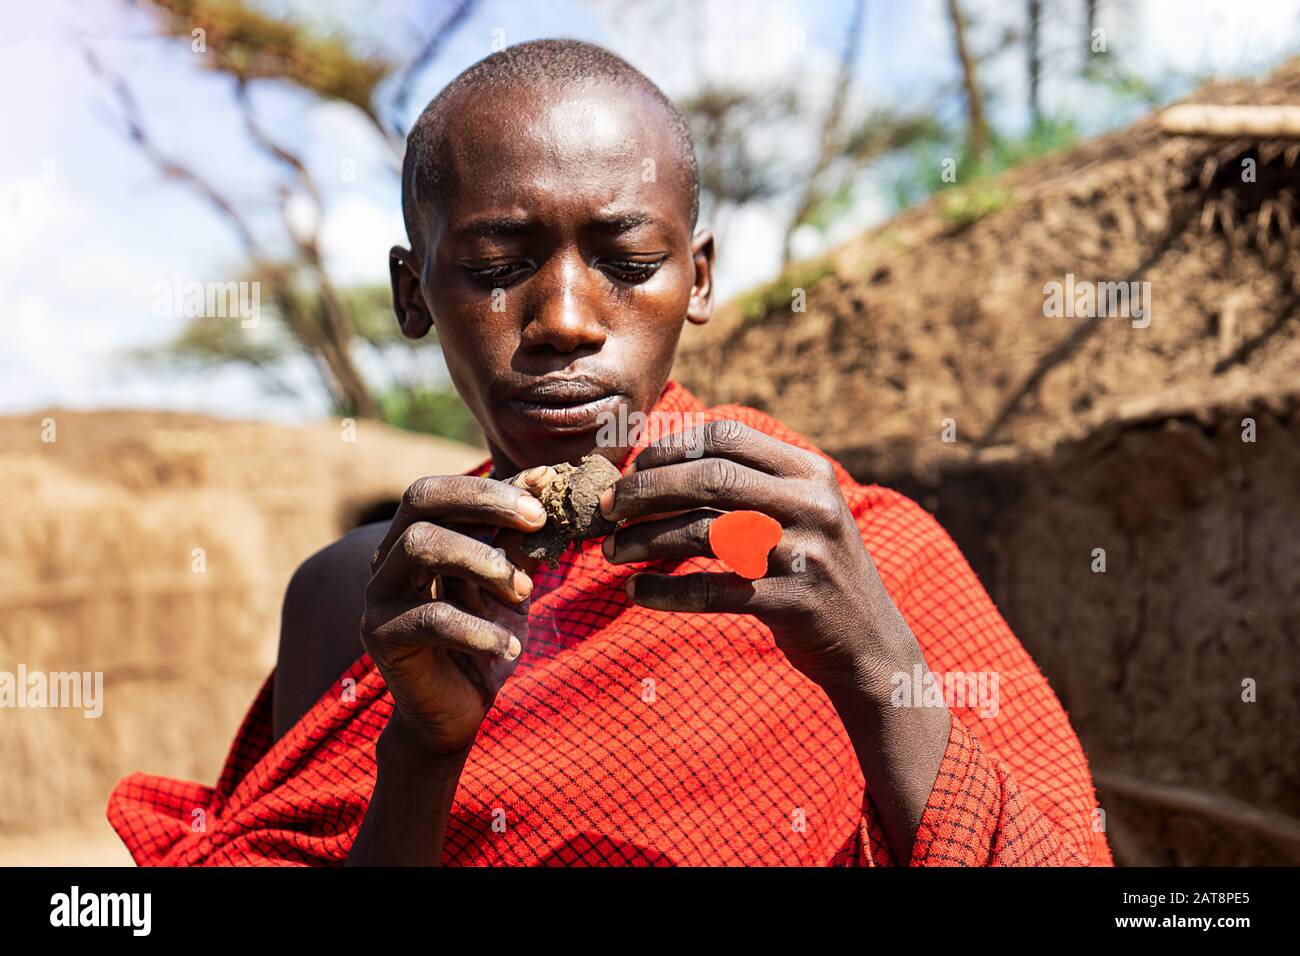 Serengeti, TANZANIE - 7 janvier: Un homme africain tenant un gâteau couvant  dans ses mains avec un anneau de coeur rouge. Tanzanie, Afrique Photo Stock  - Alamy